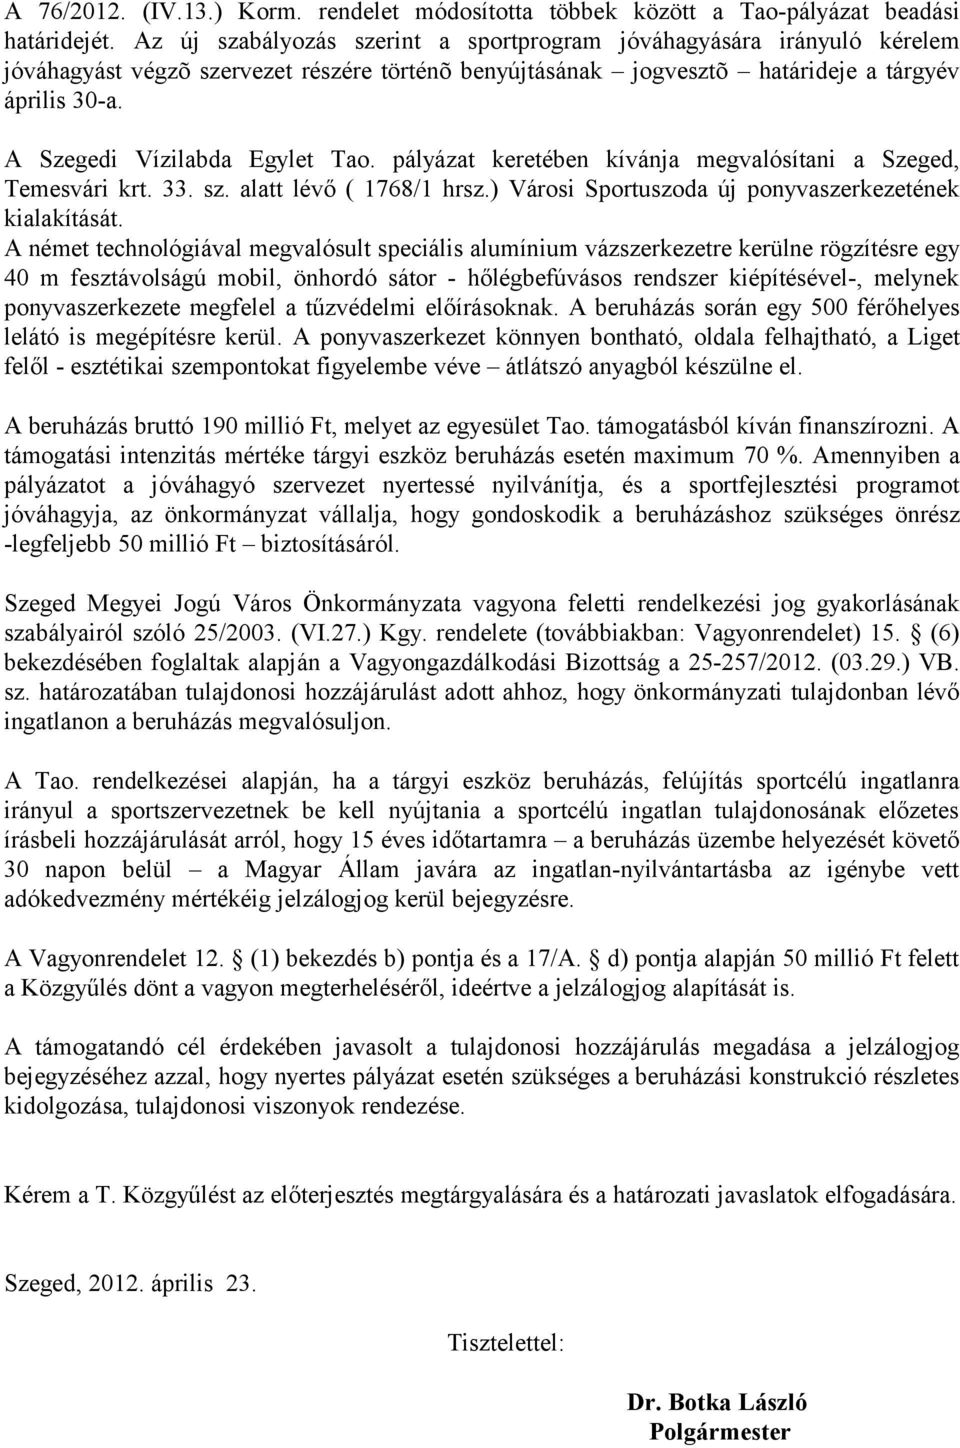 A Szegedi Vízilabda Egylet Tao. pályázat keretében kívánja megvalósítani a Szeged, Temesvári krt. 33. sz. alatt lévő ( 1768/1 hrsz.) Városi Sportuszoda új ponyvaszerkezetének kialakítását.